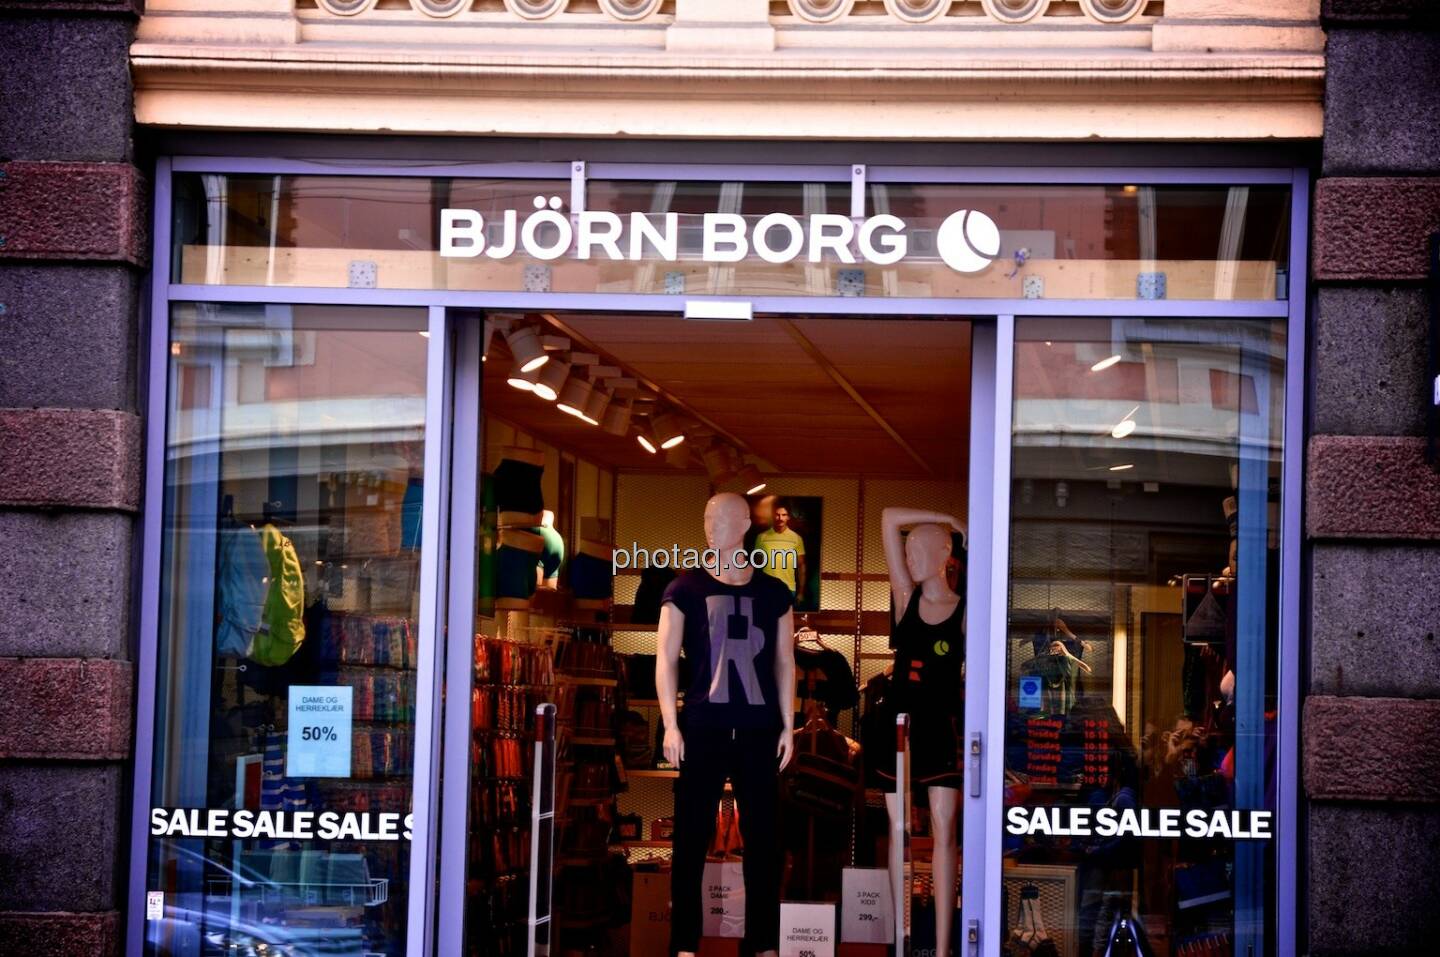 Björn Borg, Tennis, Sale, Underwear